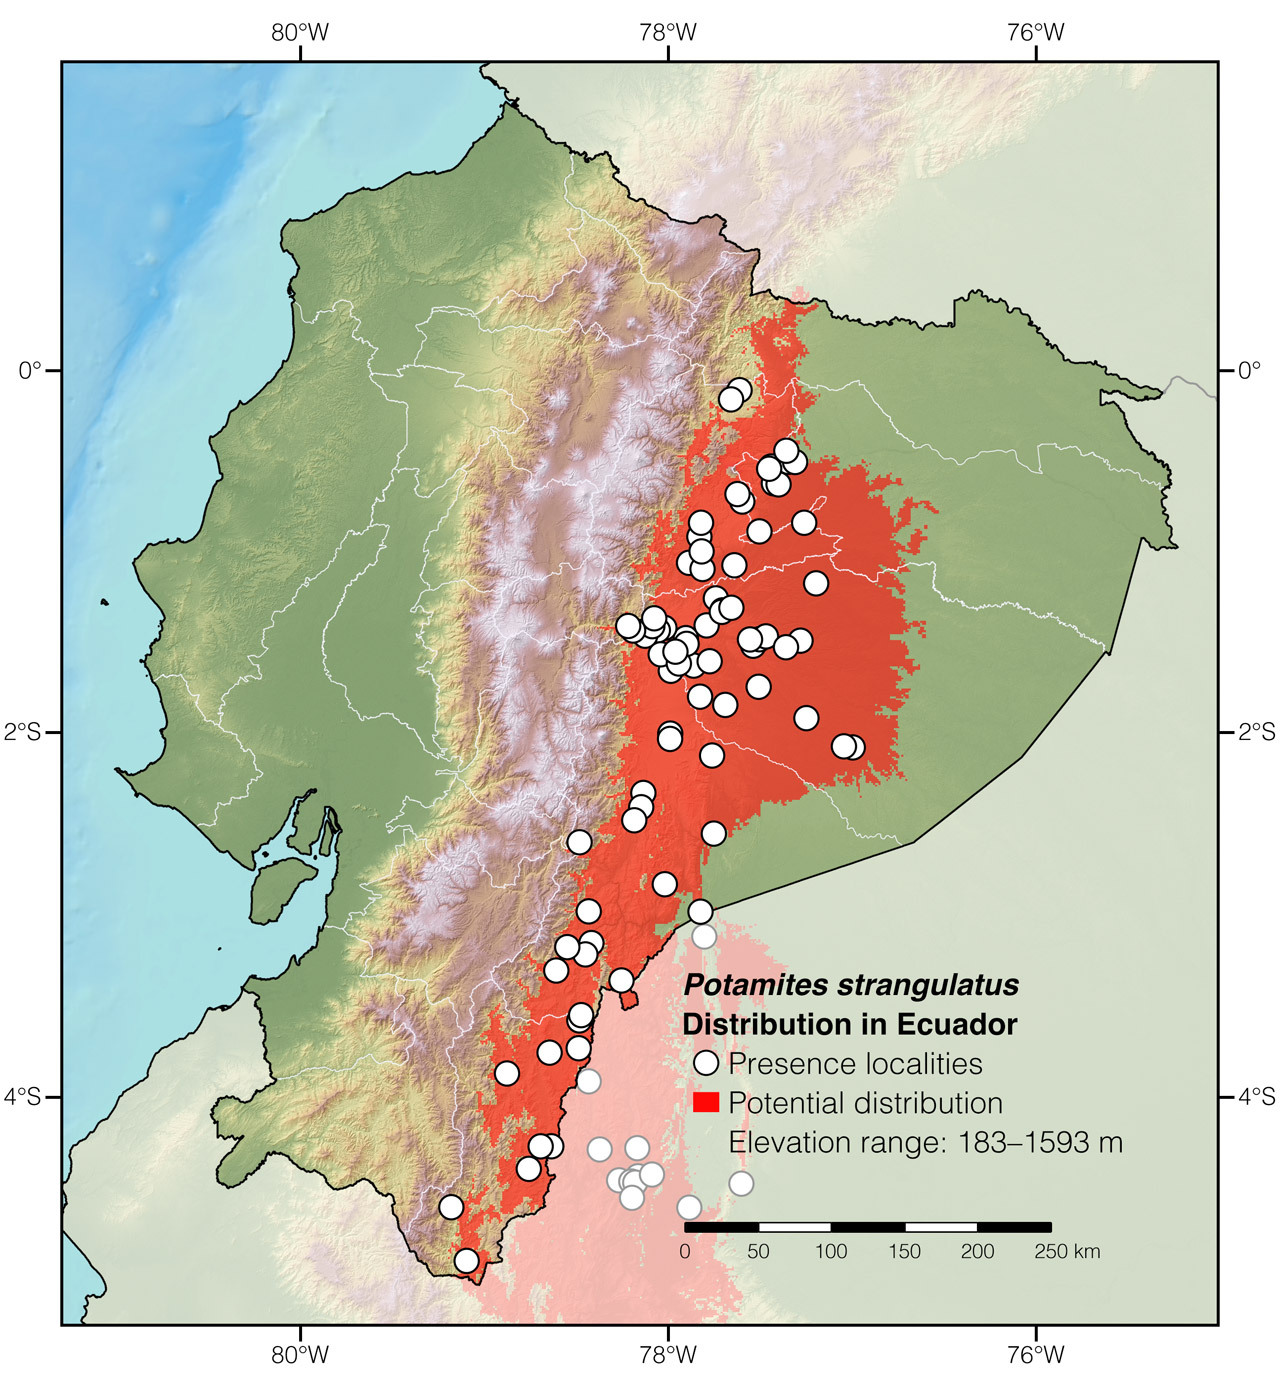 Distribution of Potamites strangulatus in Ecuador